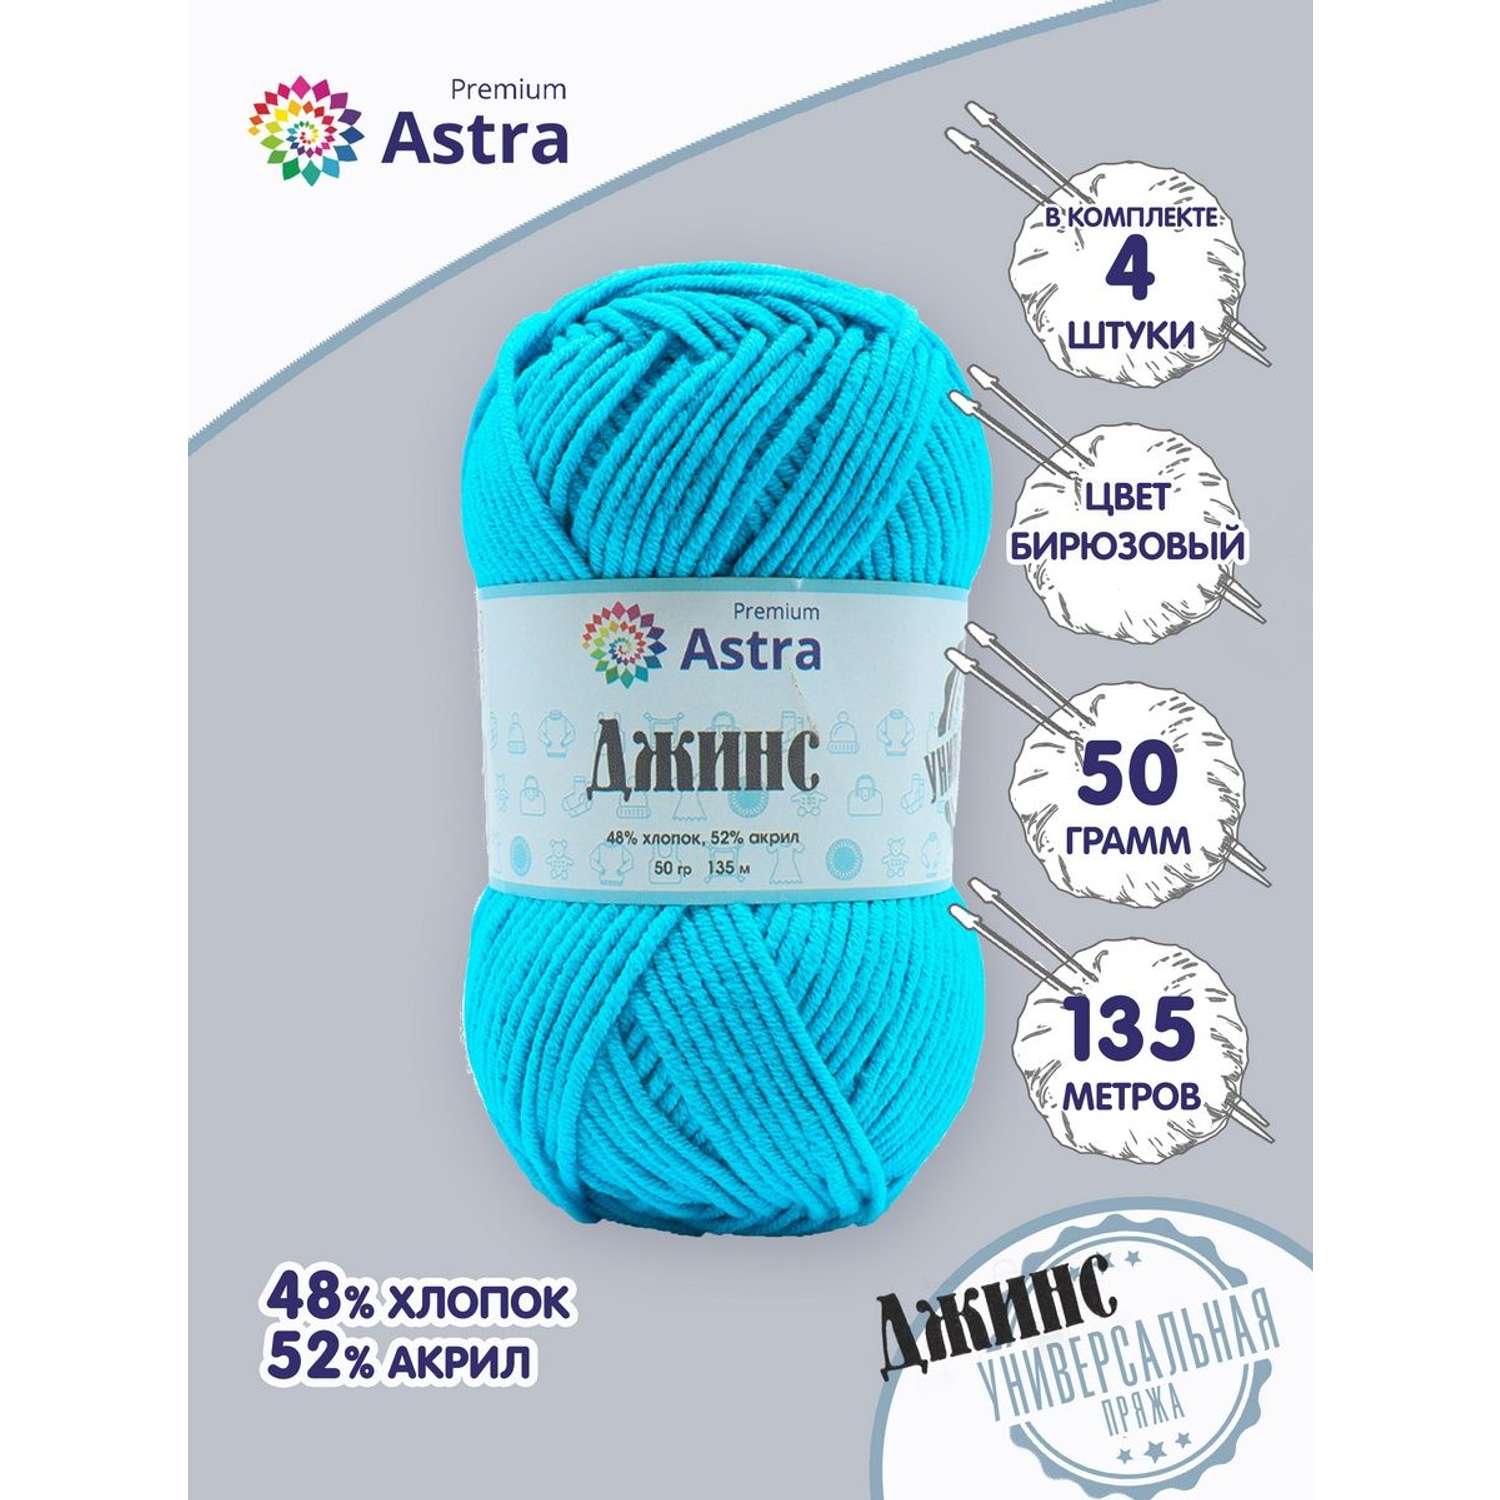 Пряжа для вязания Astra Premium джинс для повседневной одежды акрил хлопок 50 гр 135 м 505 бирюзовый 4 мотка - фото 1